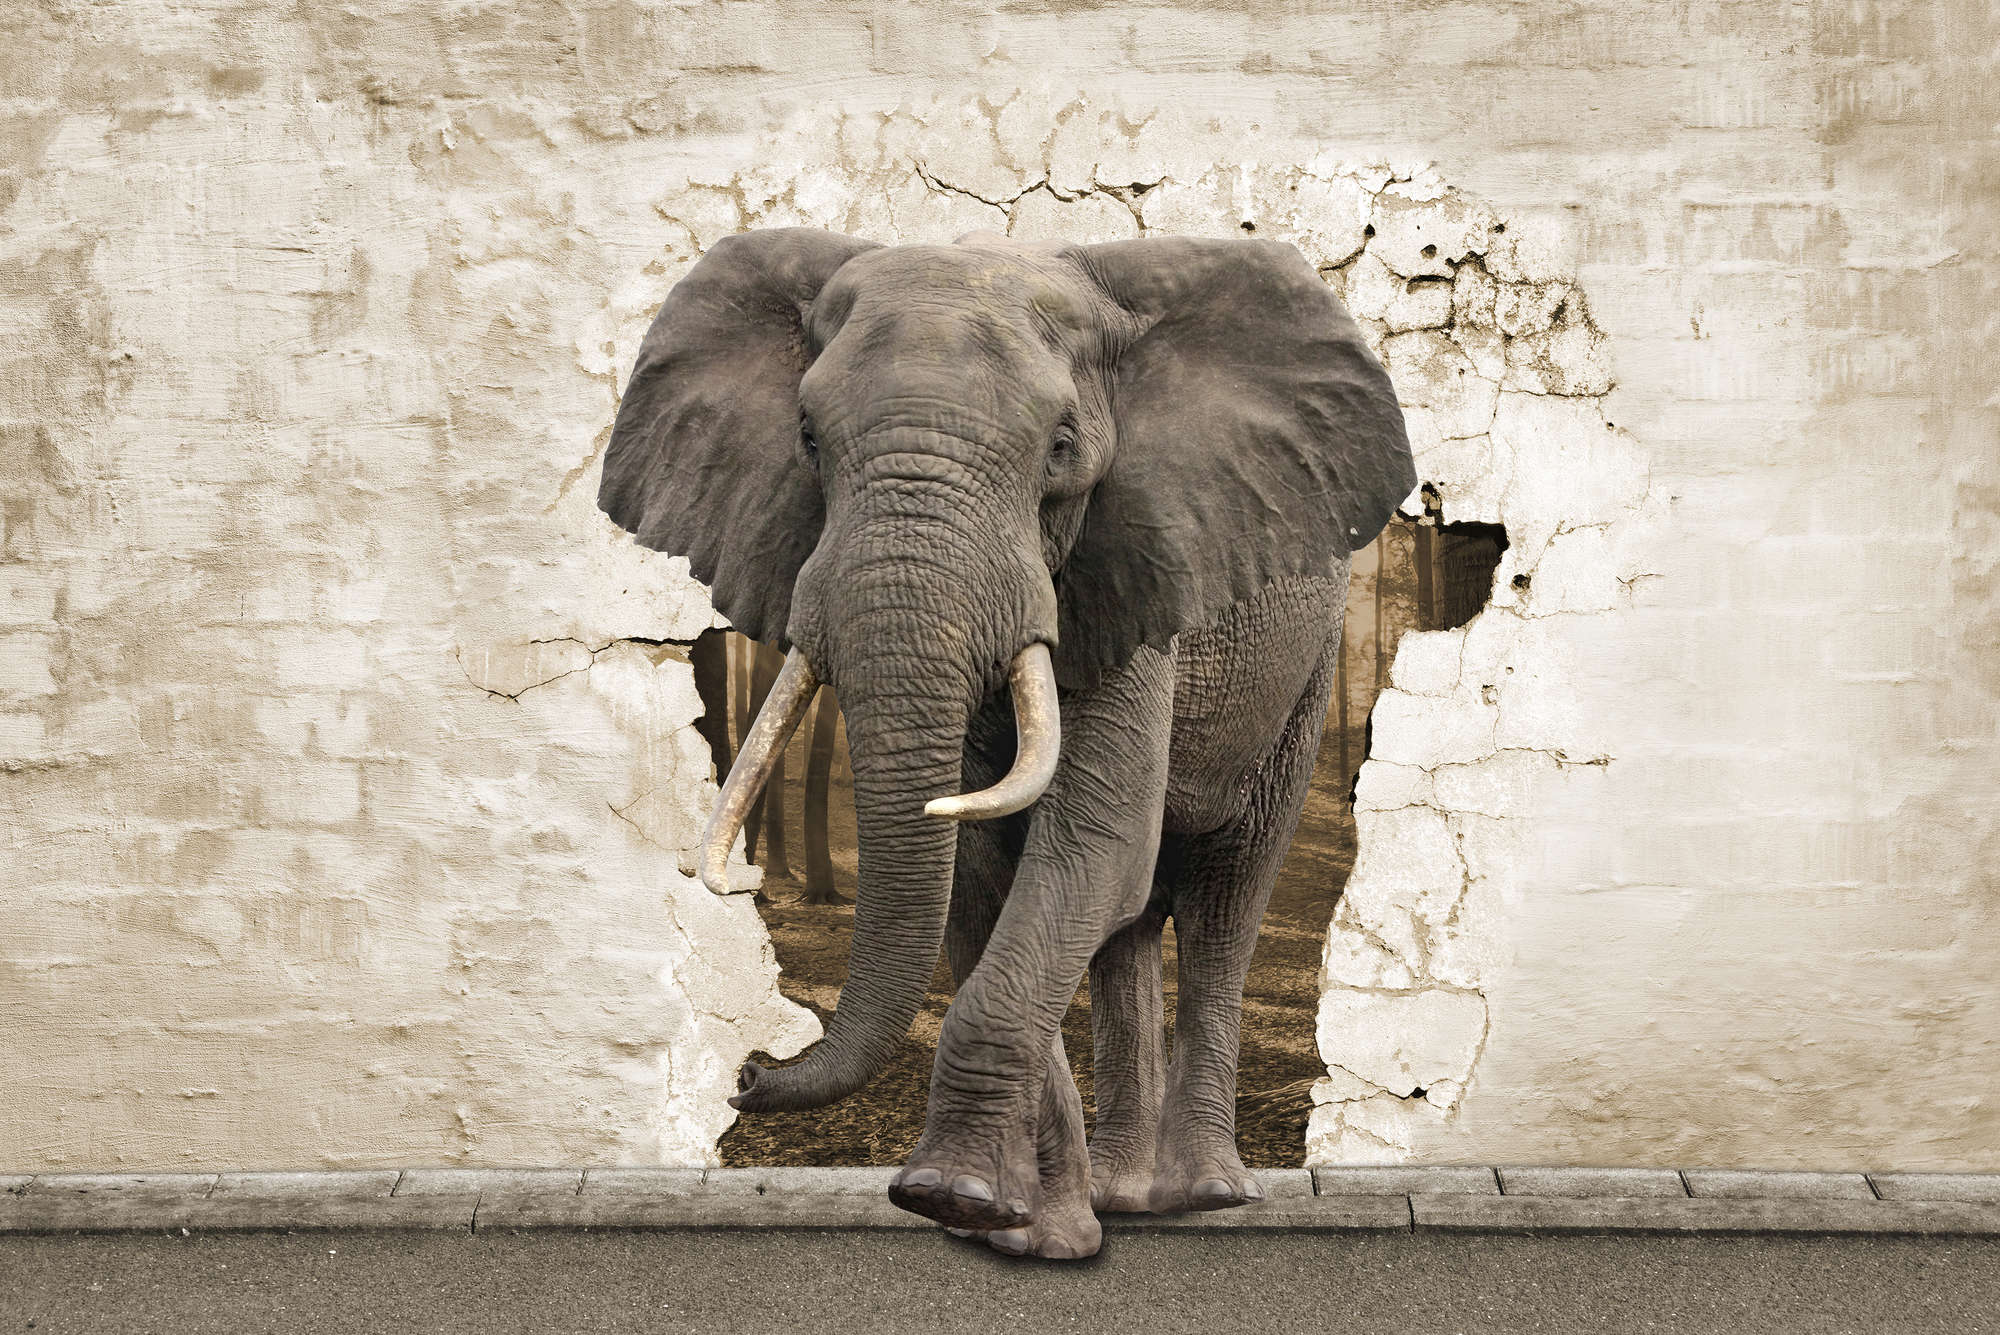             Motivo animale murale elefante sulla parete su tessuto non tessuto testurizzato
        